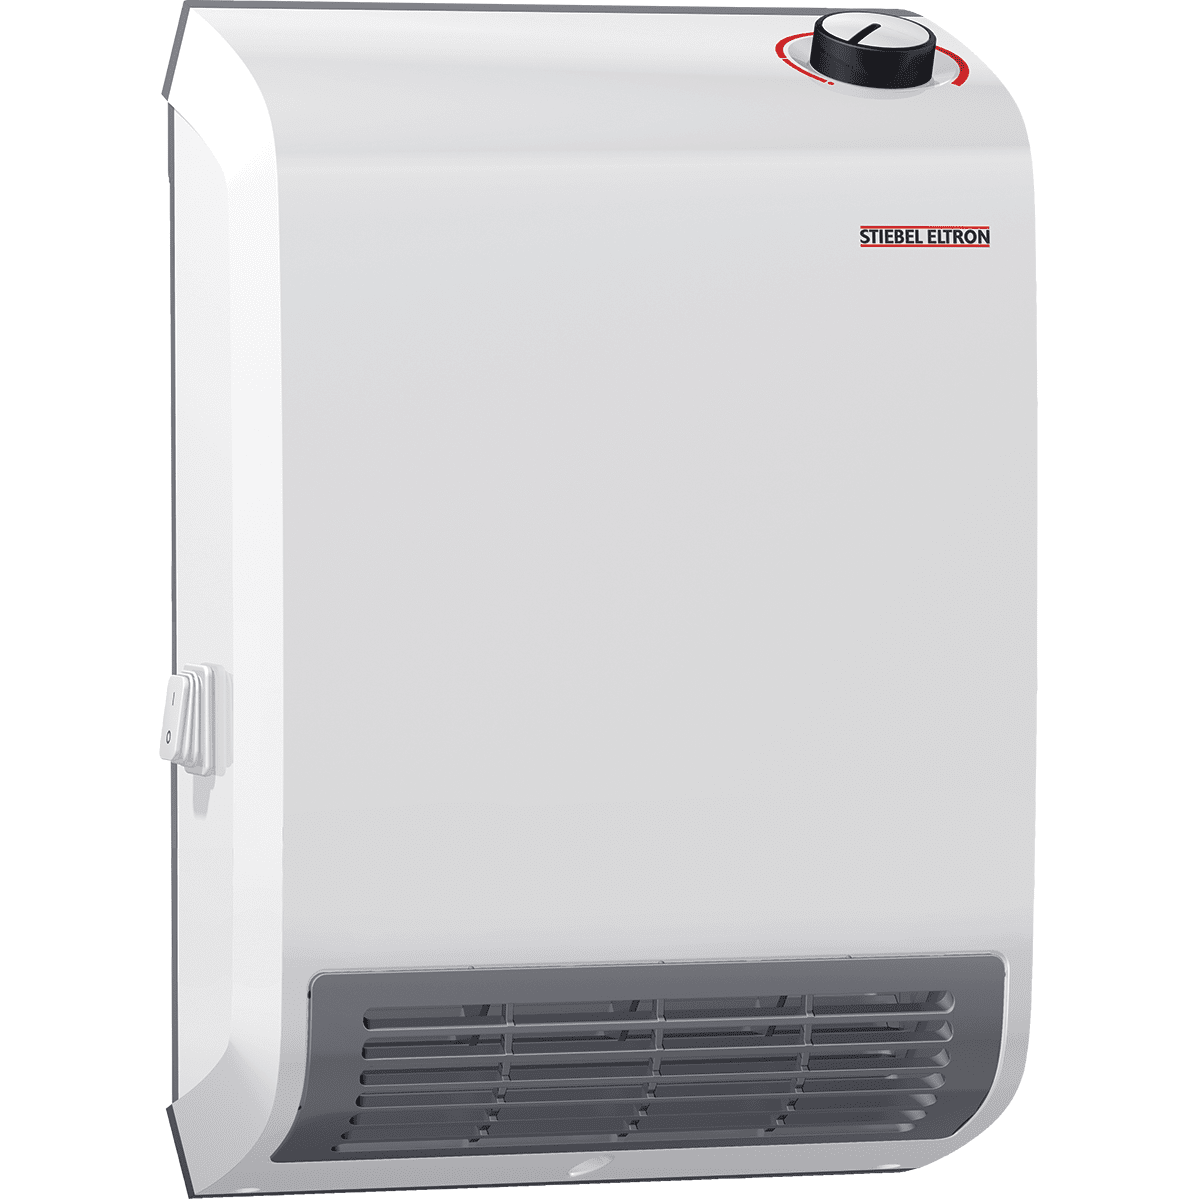 Stiebel Eltron Ck Trend Wall-mounted Electric Fan Heater 240v (ck200-2)